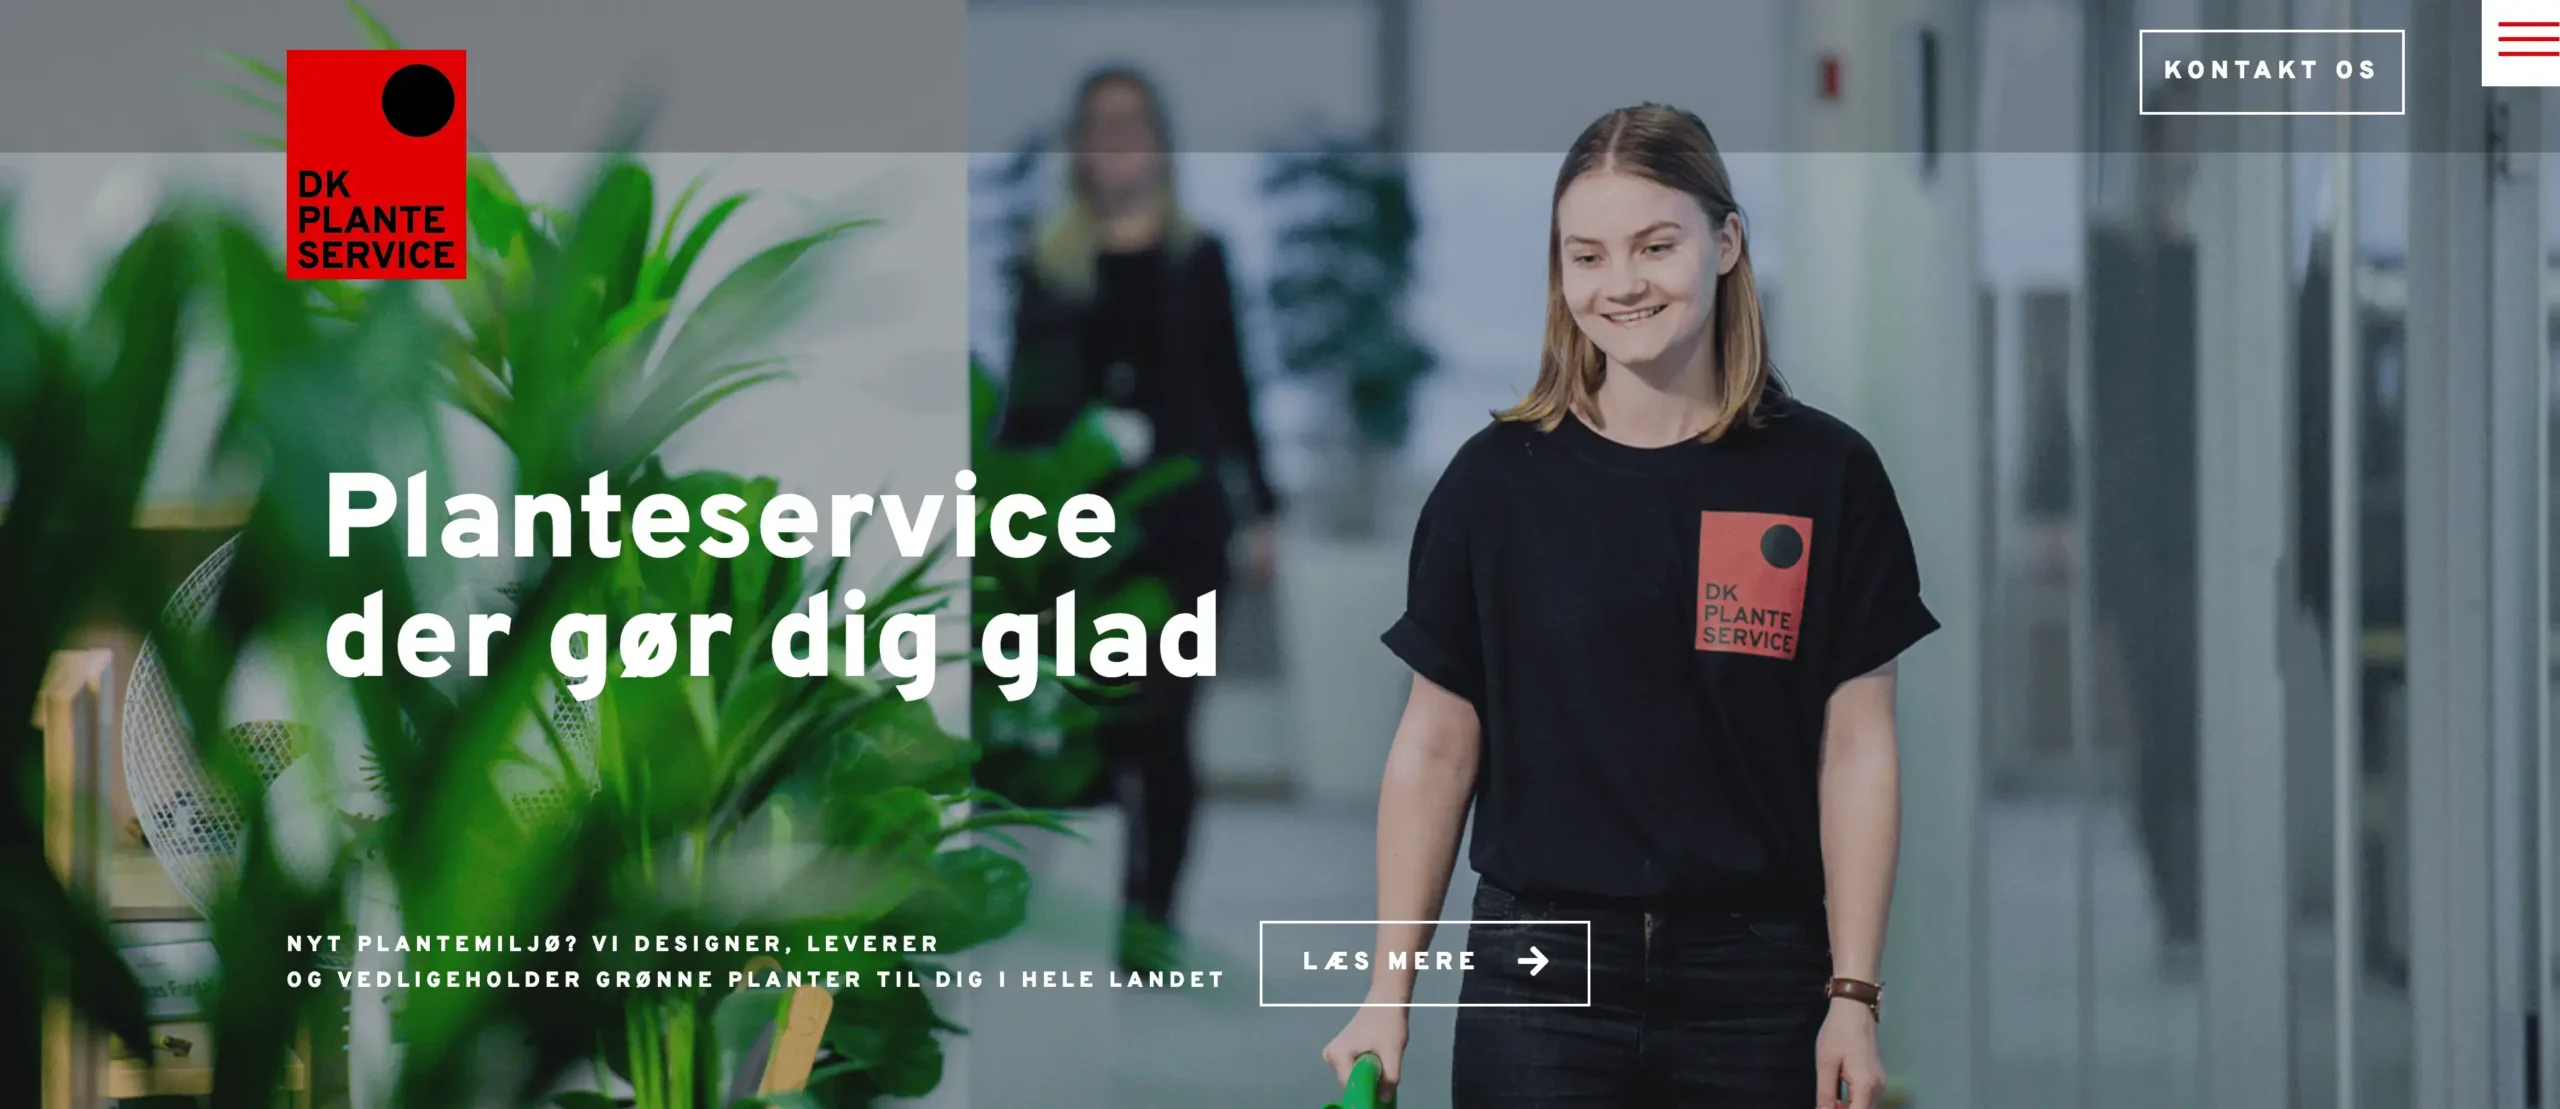 DK Planteservice hjemmeside